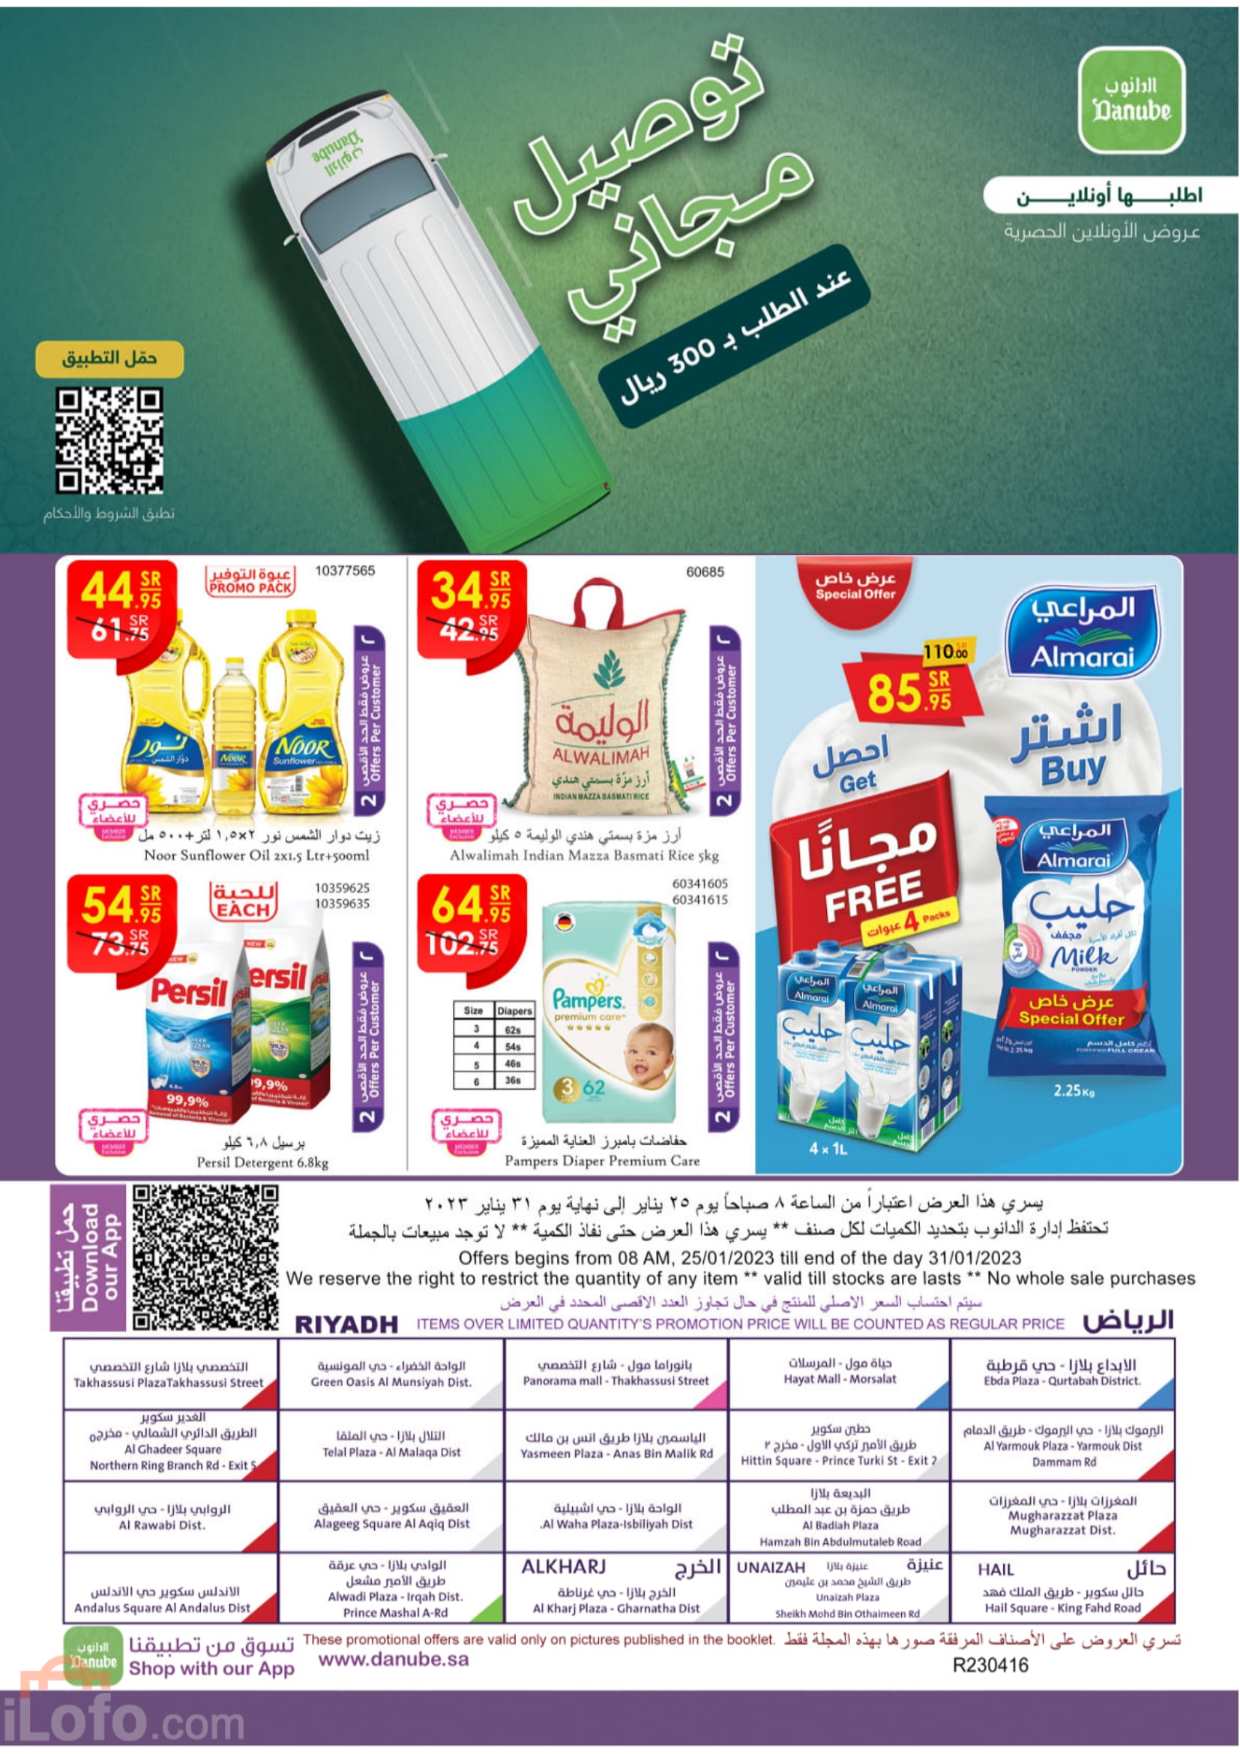 صفحة 61 في عروض عالم المنتجات في الدانوب الرياض حائل الخرج وعنيزة